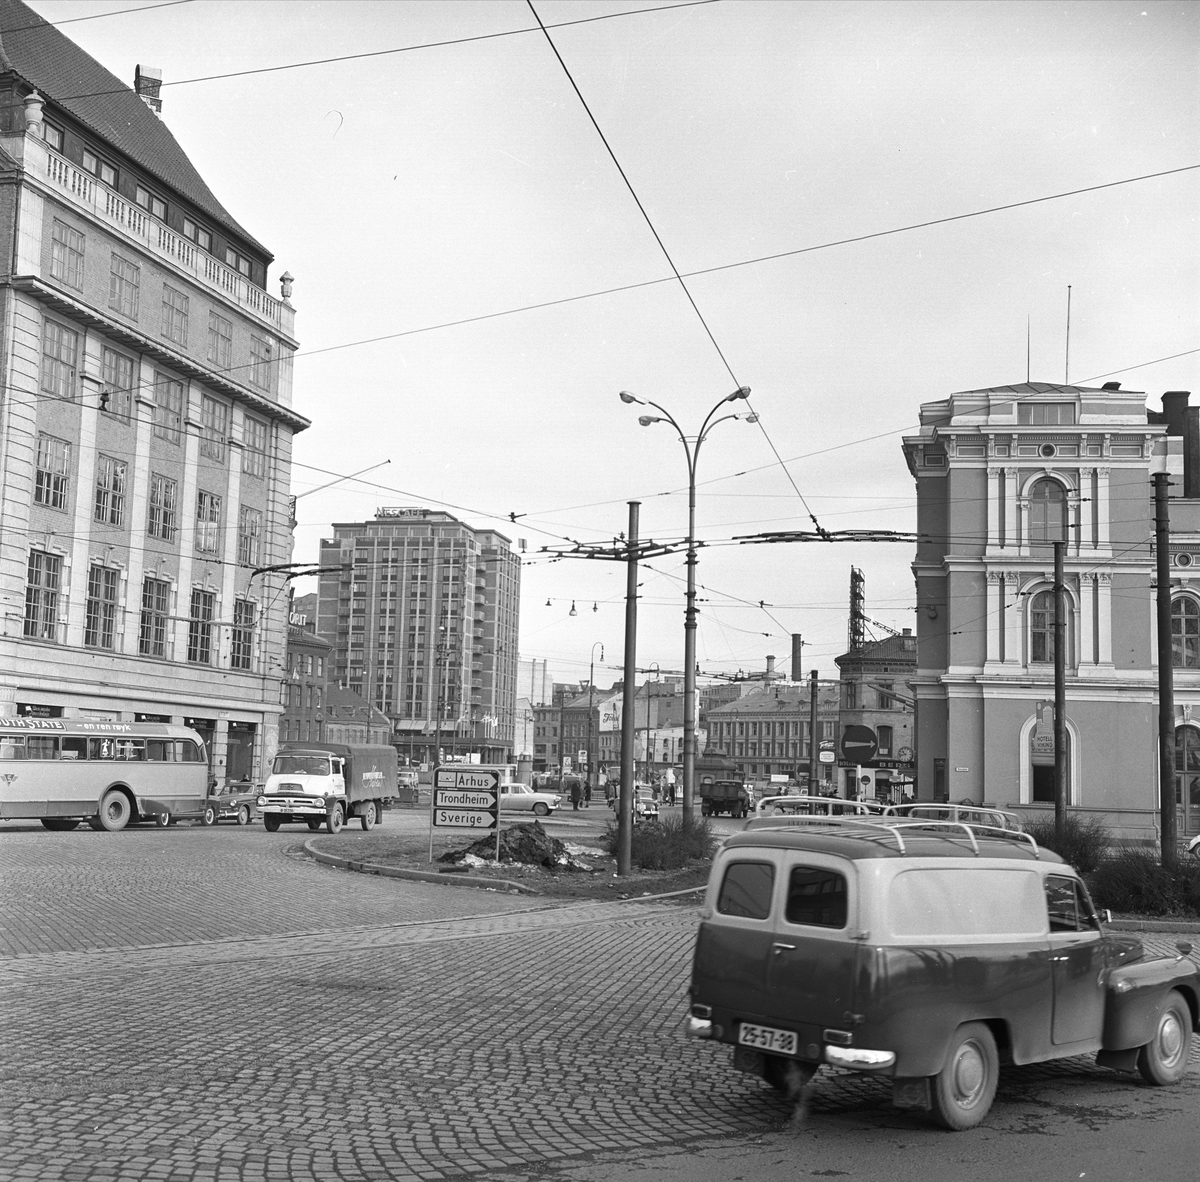 Jernbanetorget 1, Oslo, 02.05.1963. Østbanestasjonen, bygårder og trafikk.